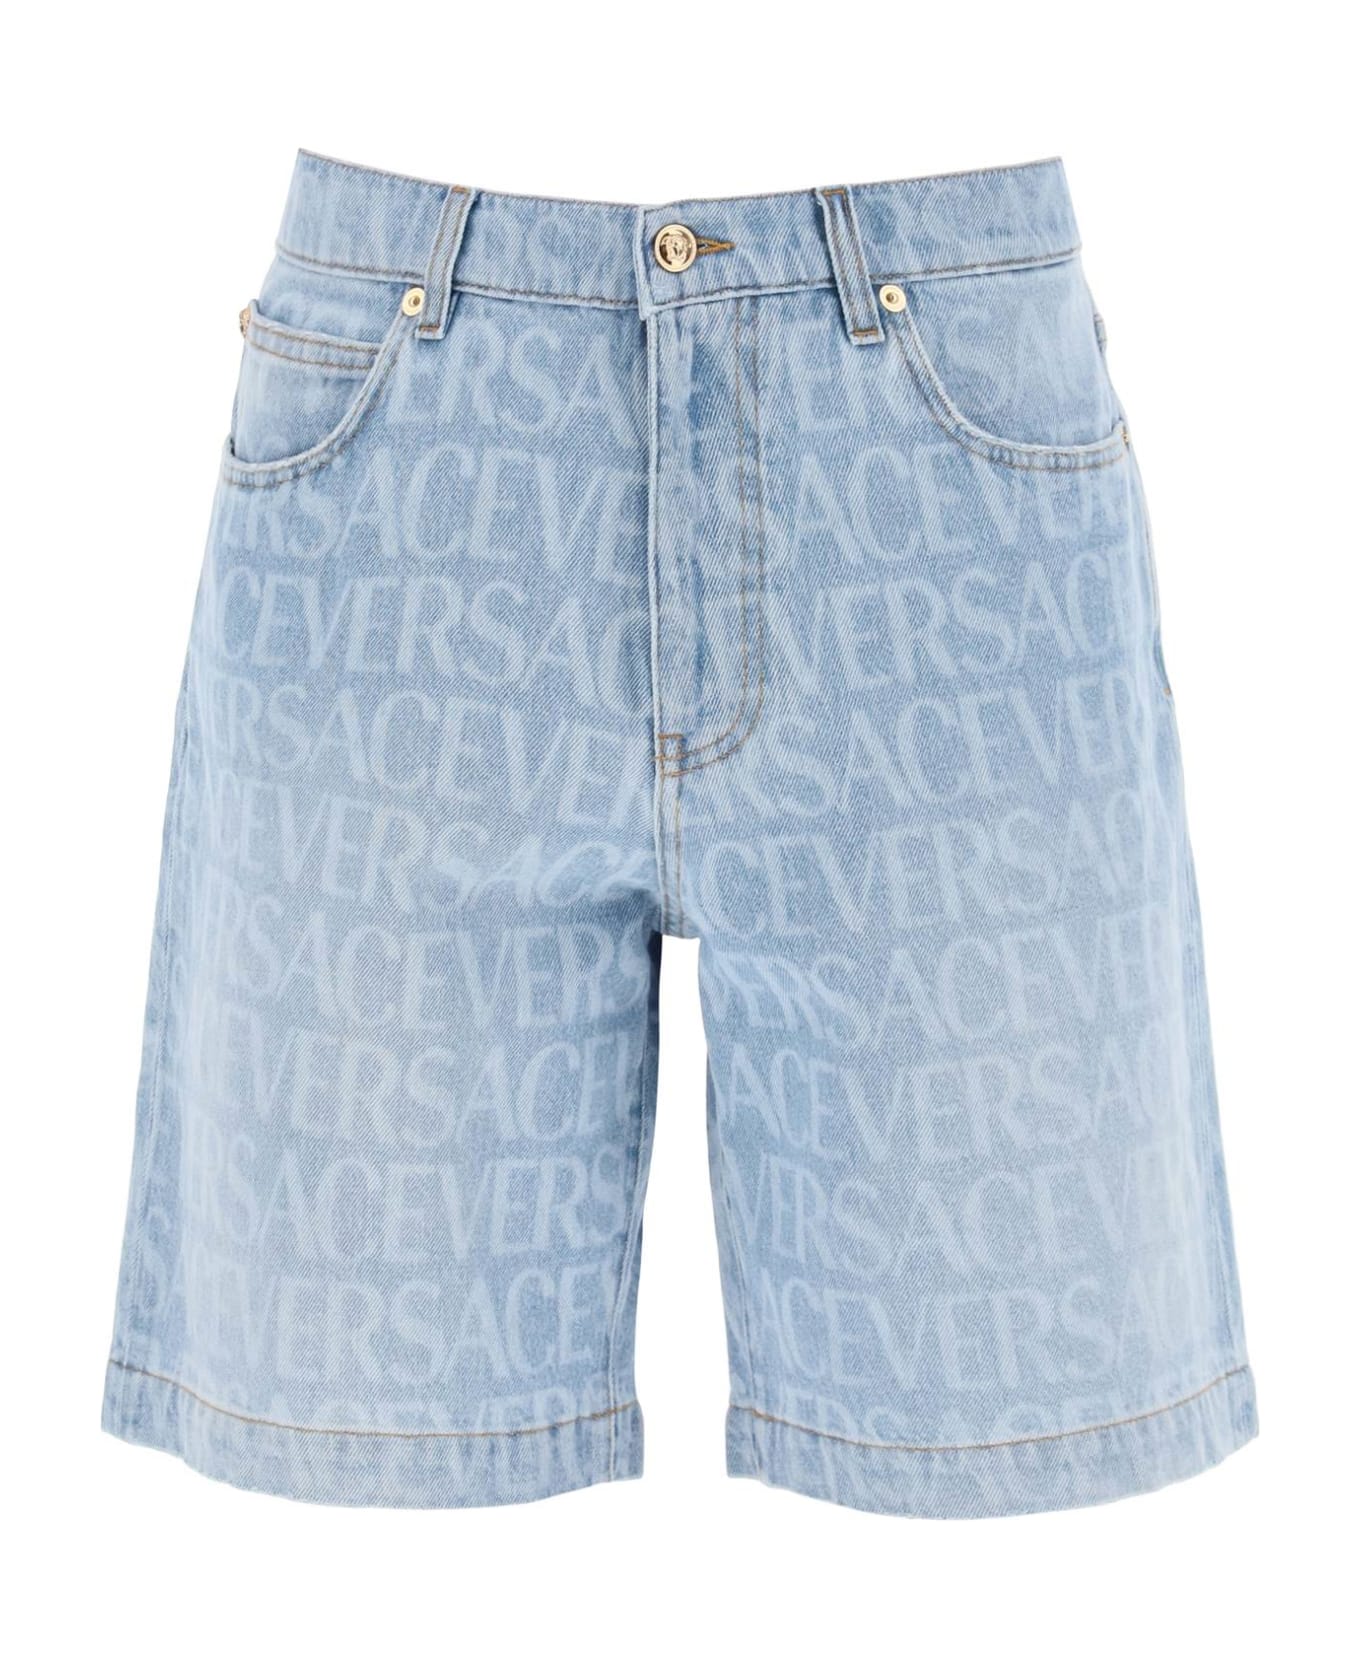 Versace Denim Shorts - Denim